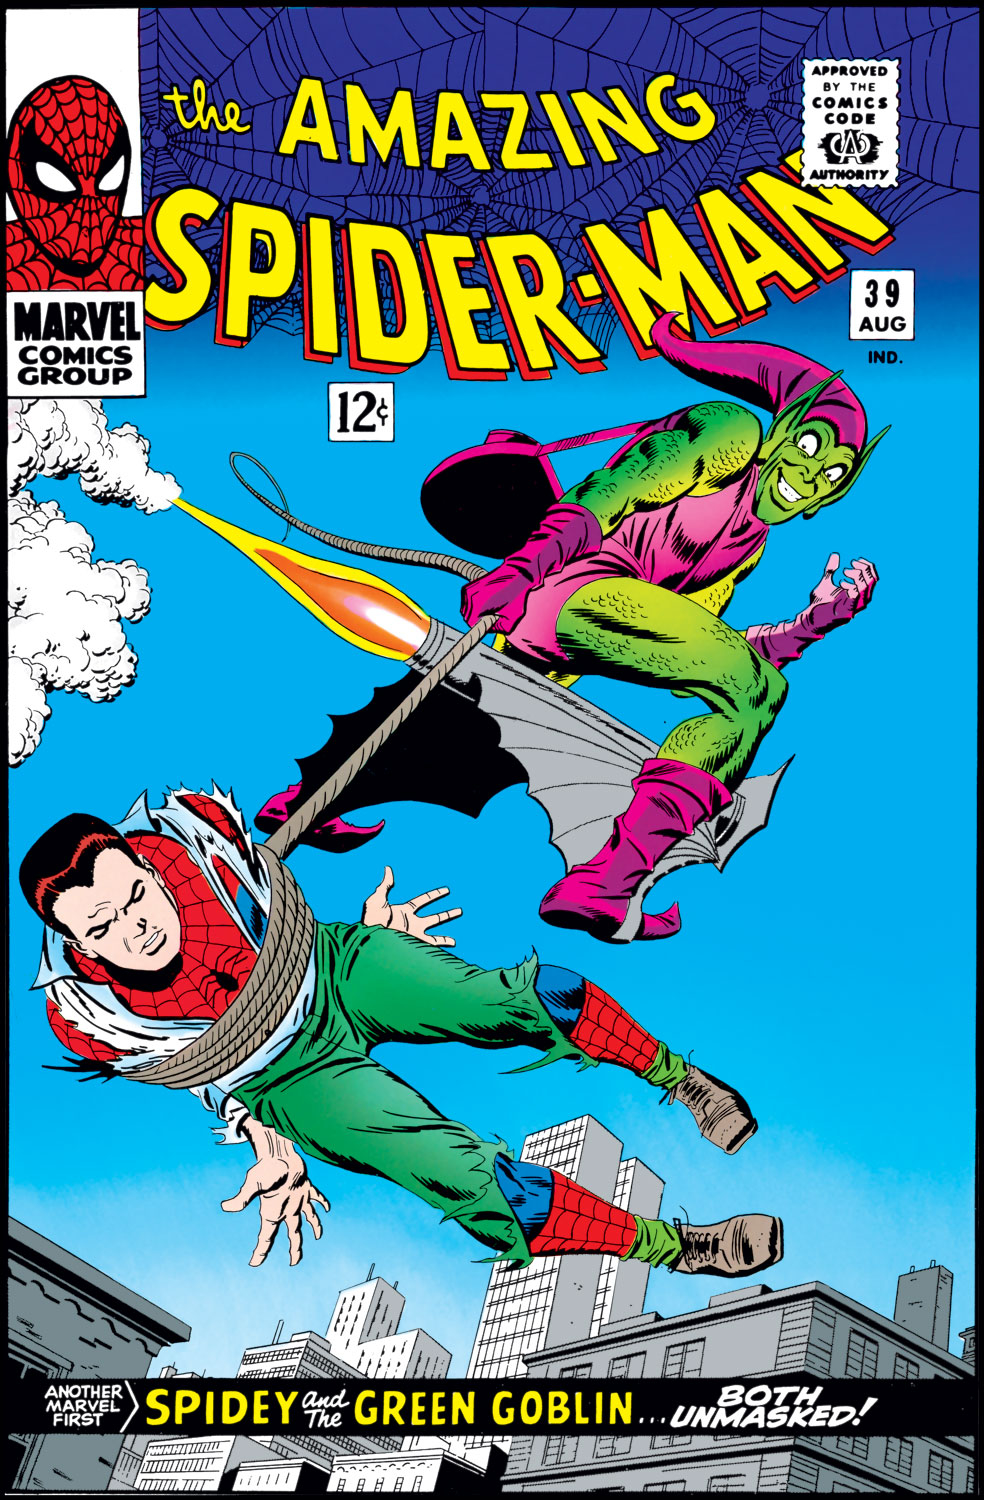 The Amazing Spider-Man: el nuevo Duende Verde de Marvel es la